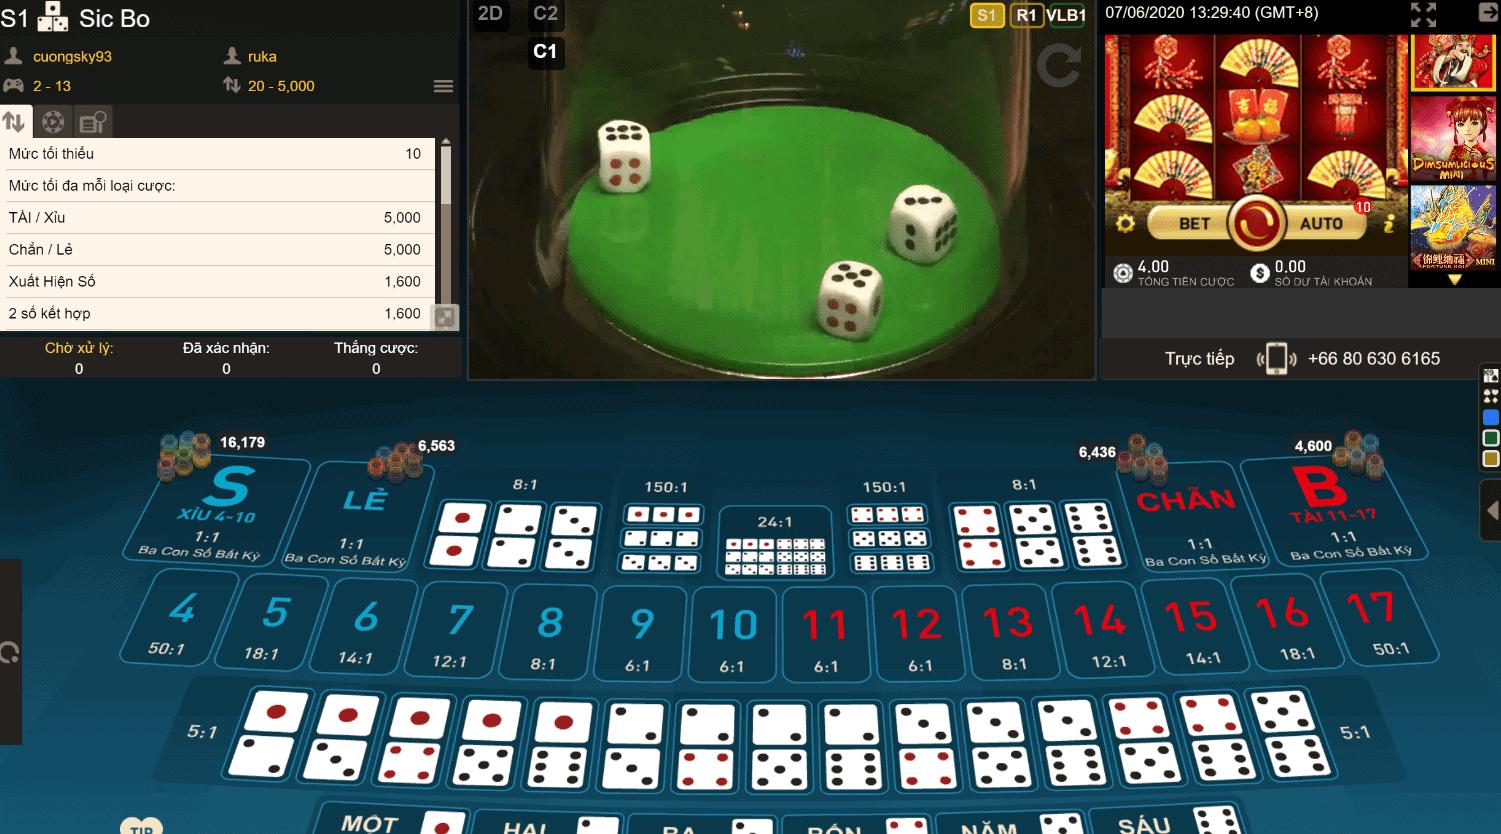 Một tựa game không thể bỏ qua trong sòng bài casino được mang tên Sicbo